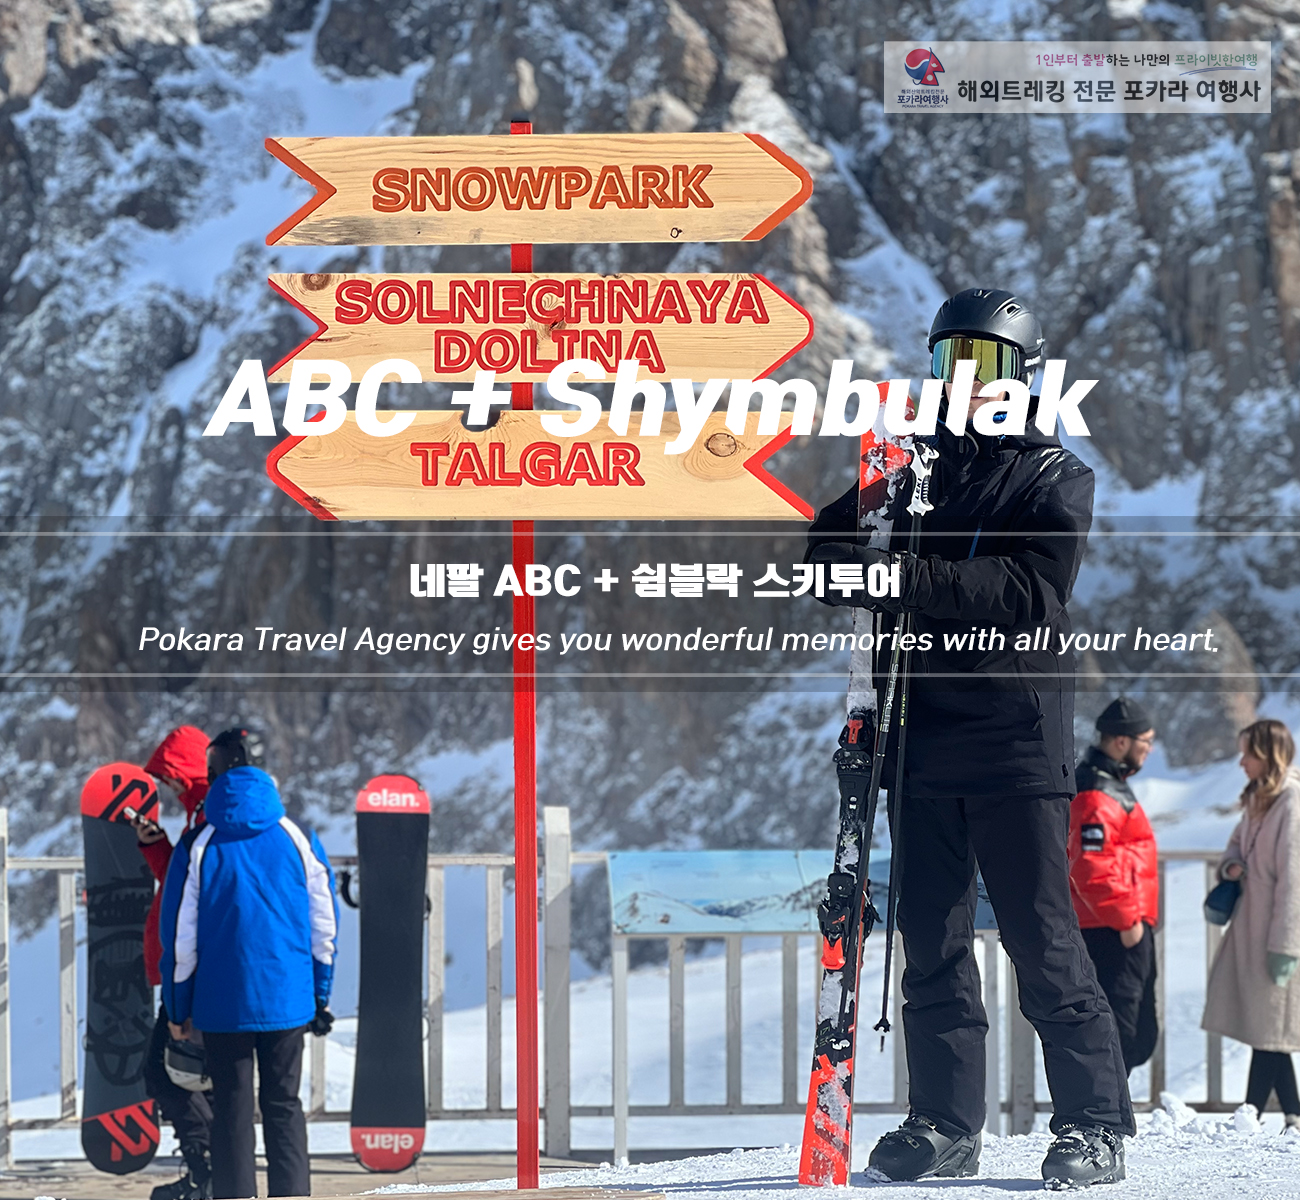 [소그룹/단체] 네팔ABC+중앙아시아 카자흐스탄 스키투어 11일